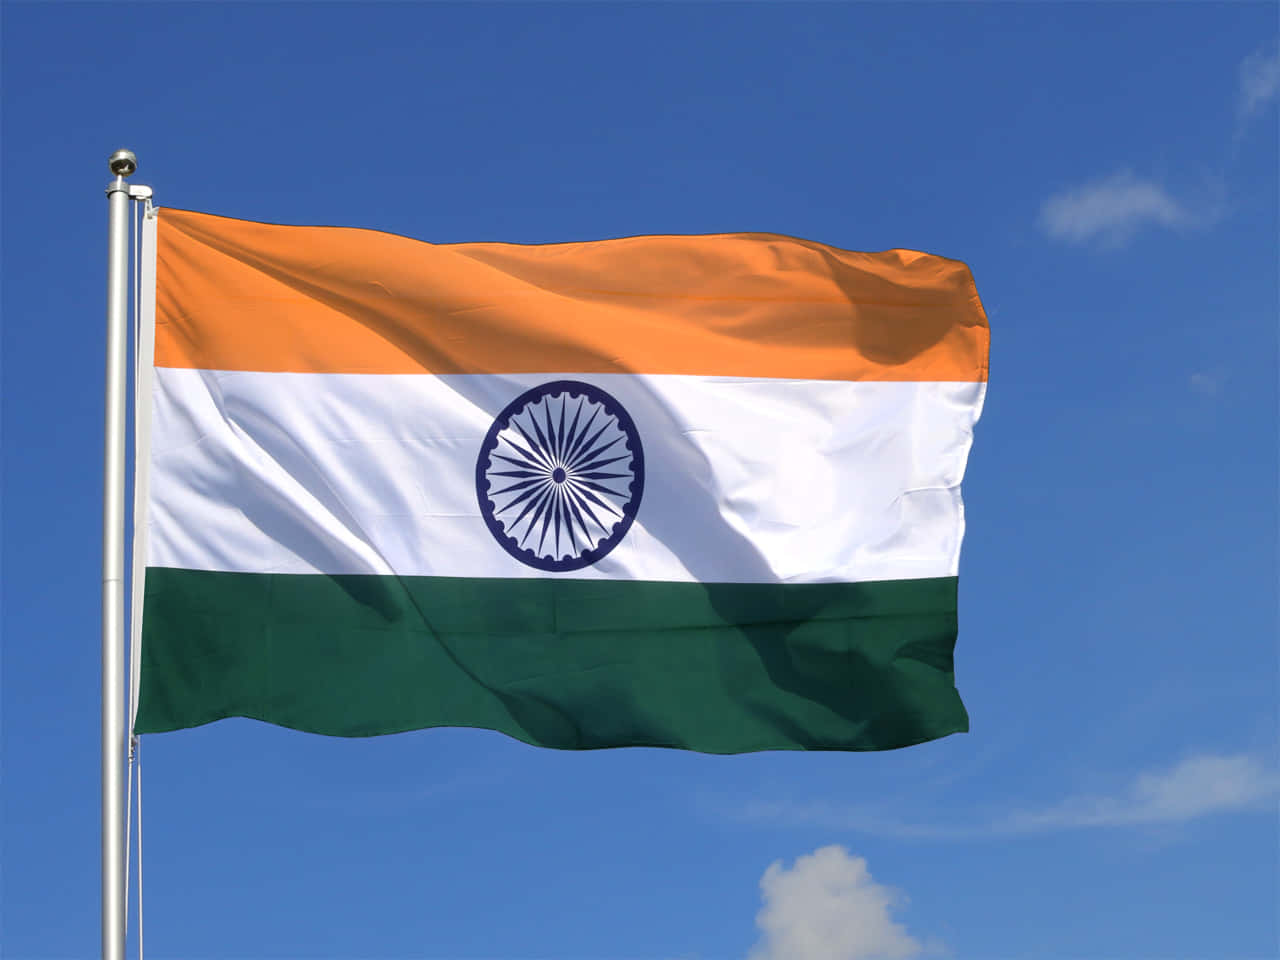 Detindiske Nationalsflag - Som Repræsenterer Enhed I Mangfoldighed.